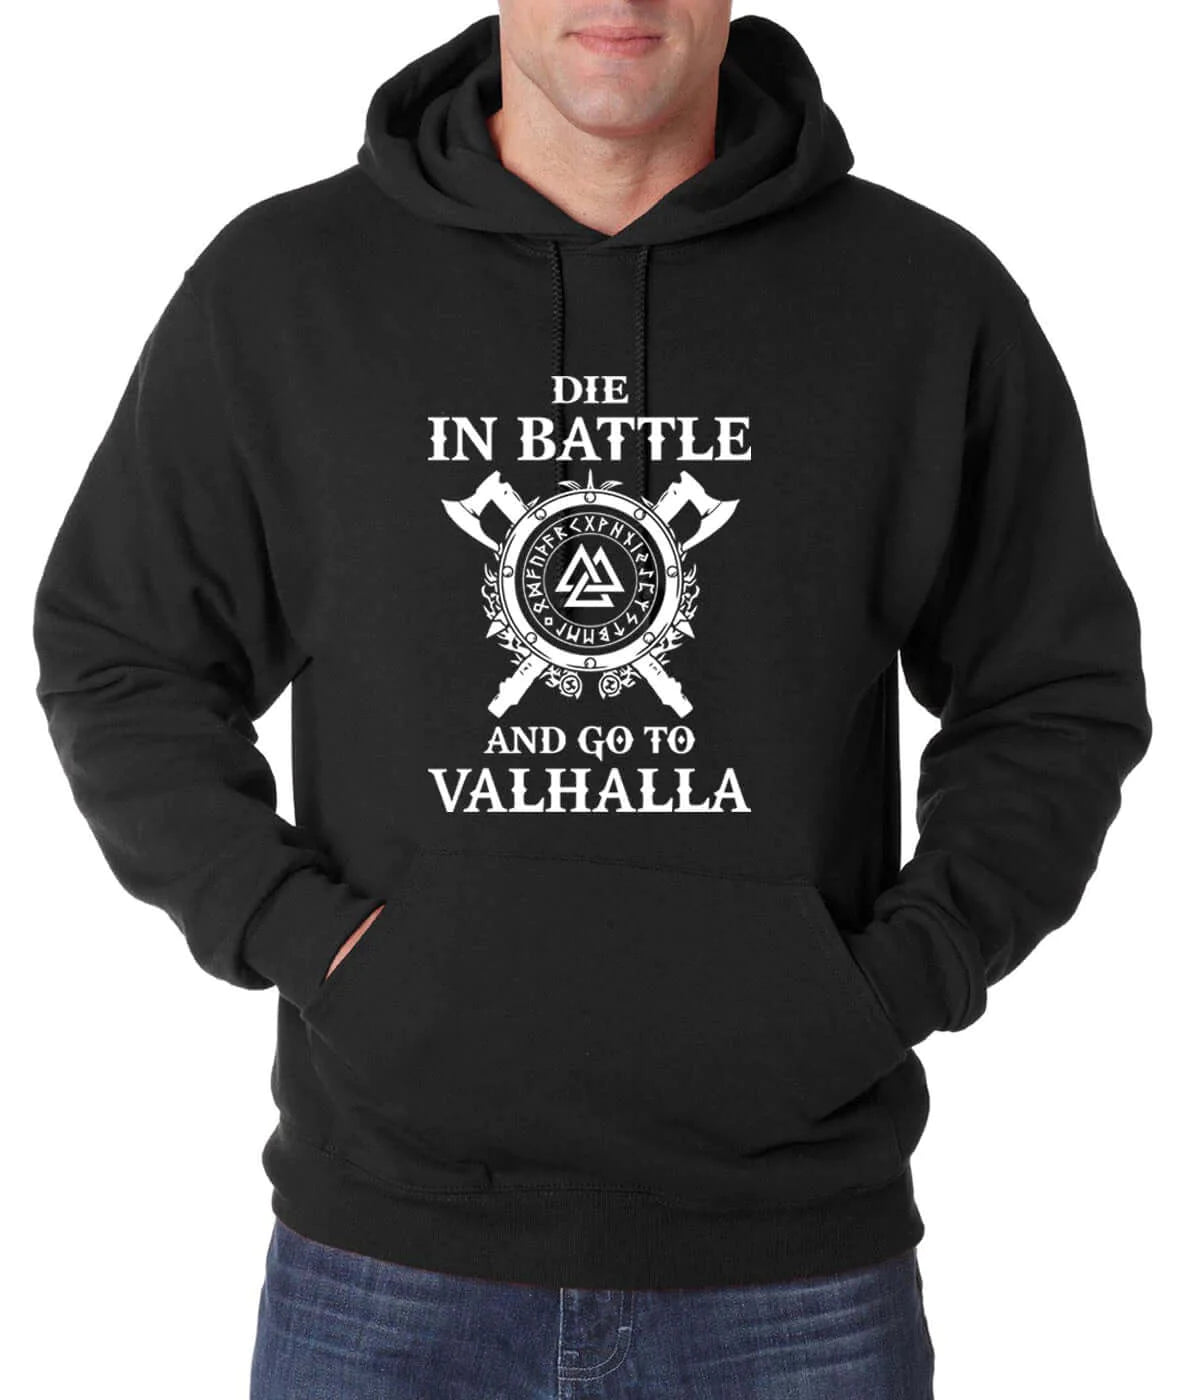 Go to Valhalla - Viking Hoodie